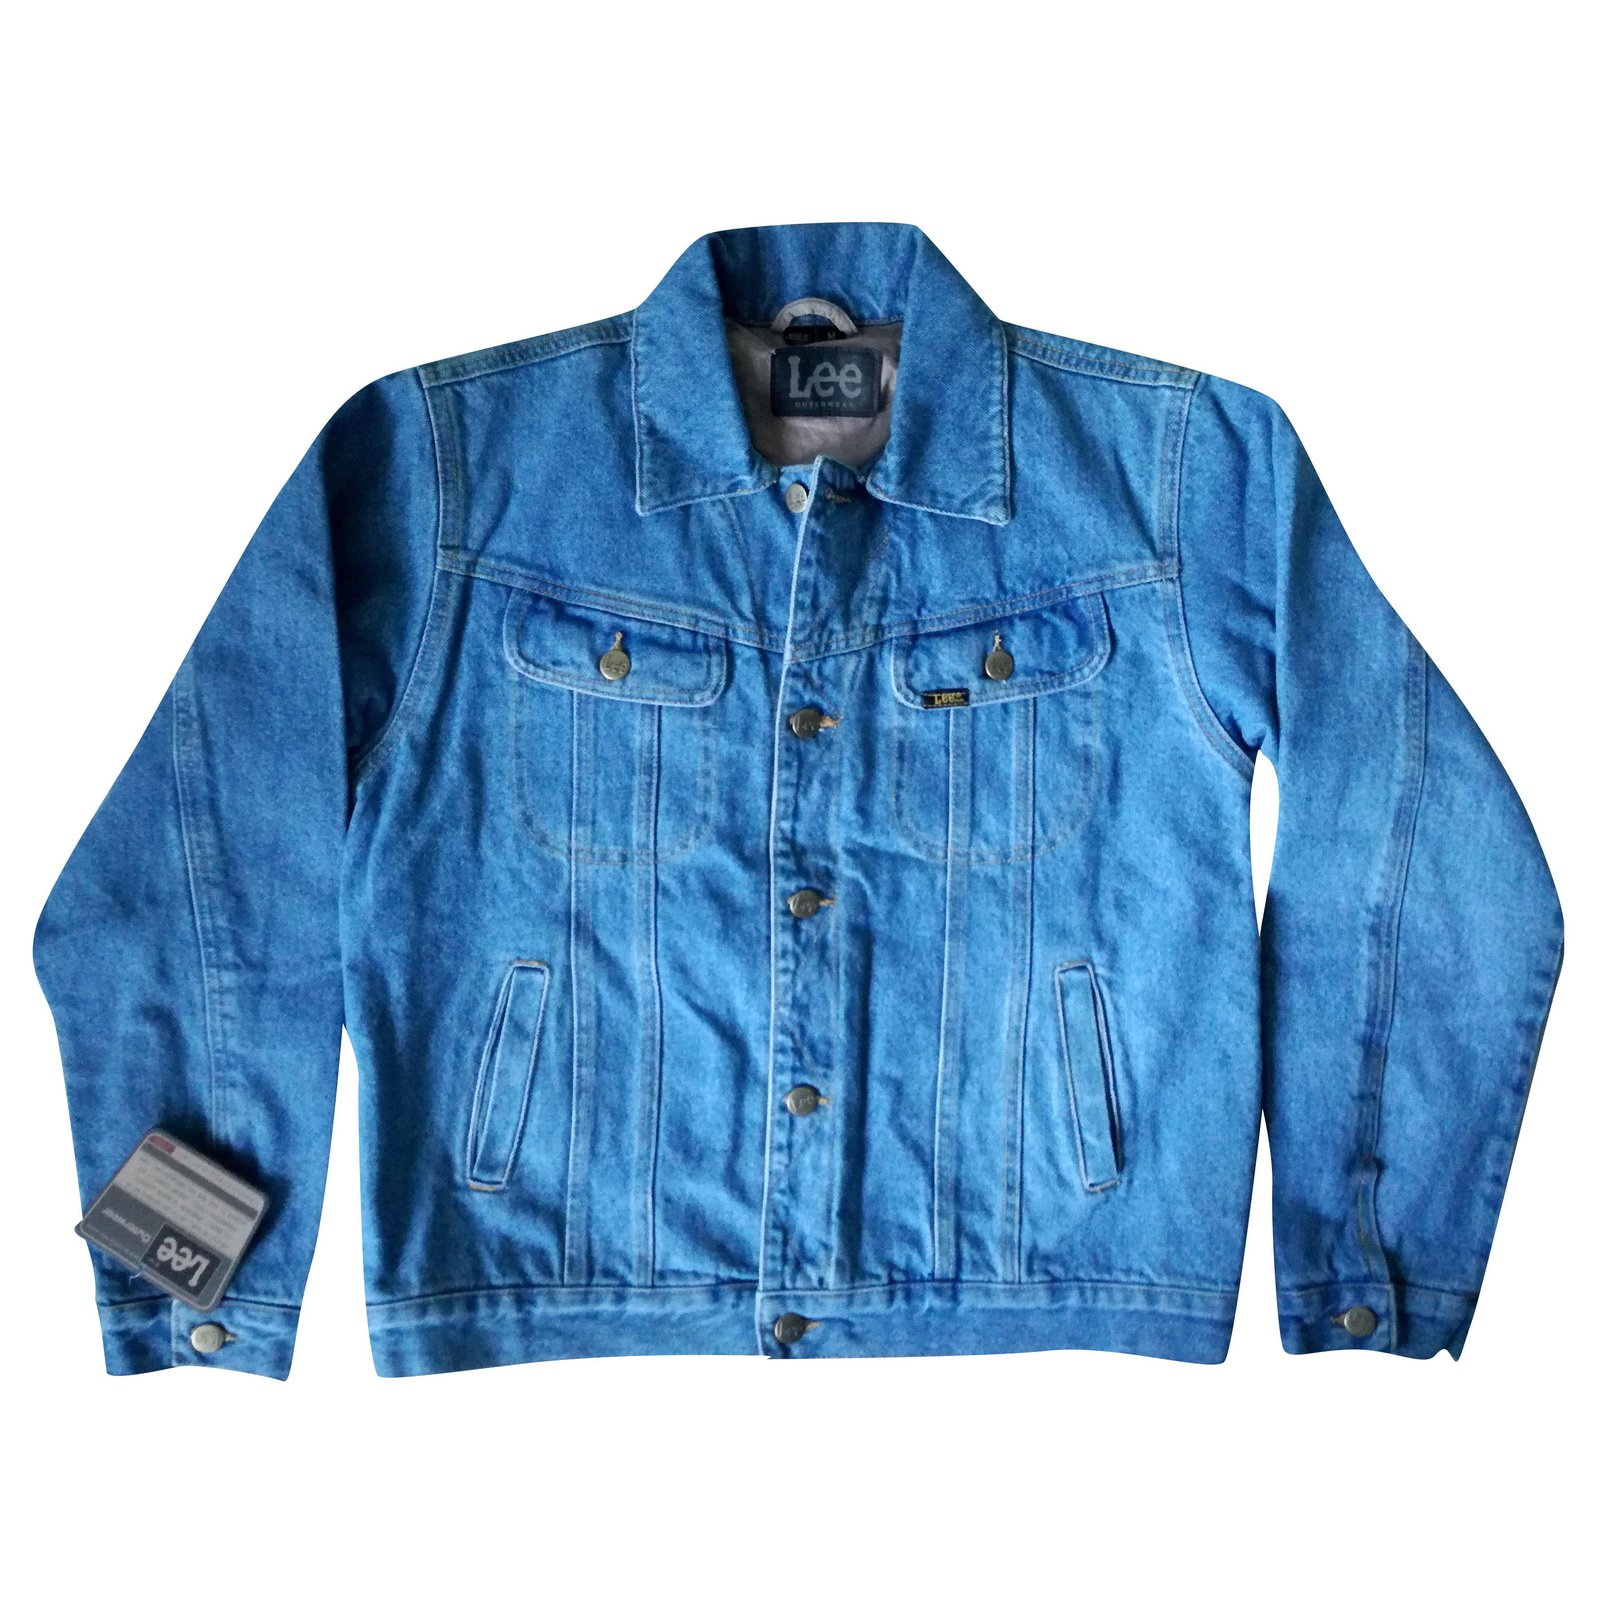 LEE Blue Vintage Denim Jeans Slim Fit Jacket Size XL | eBay